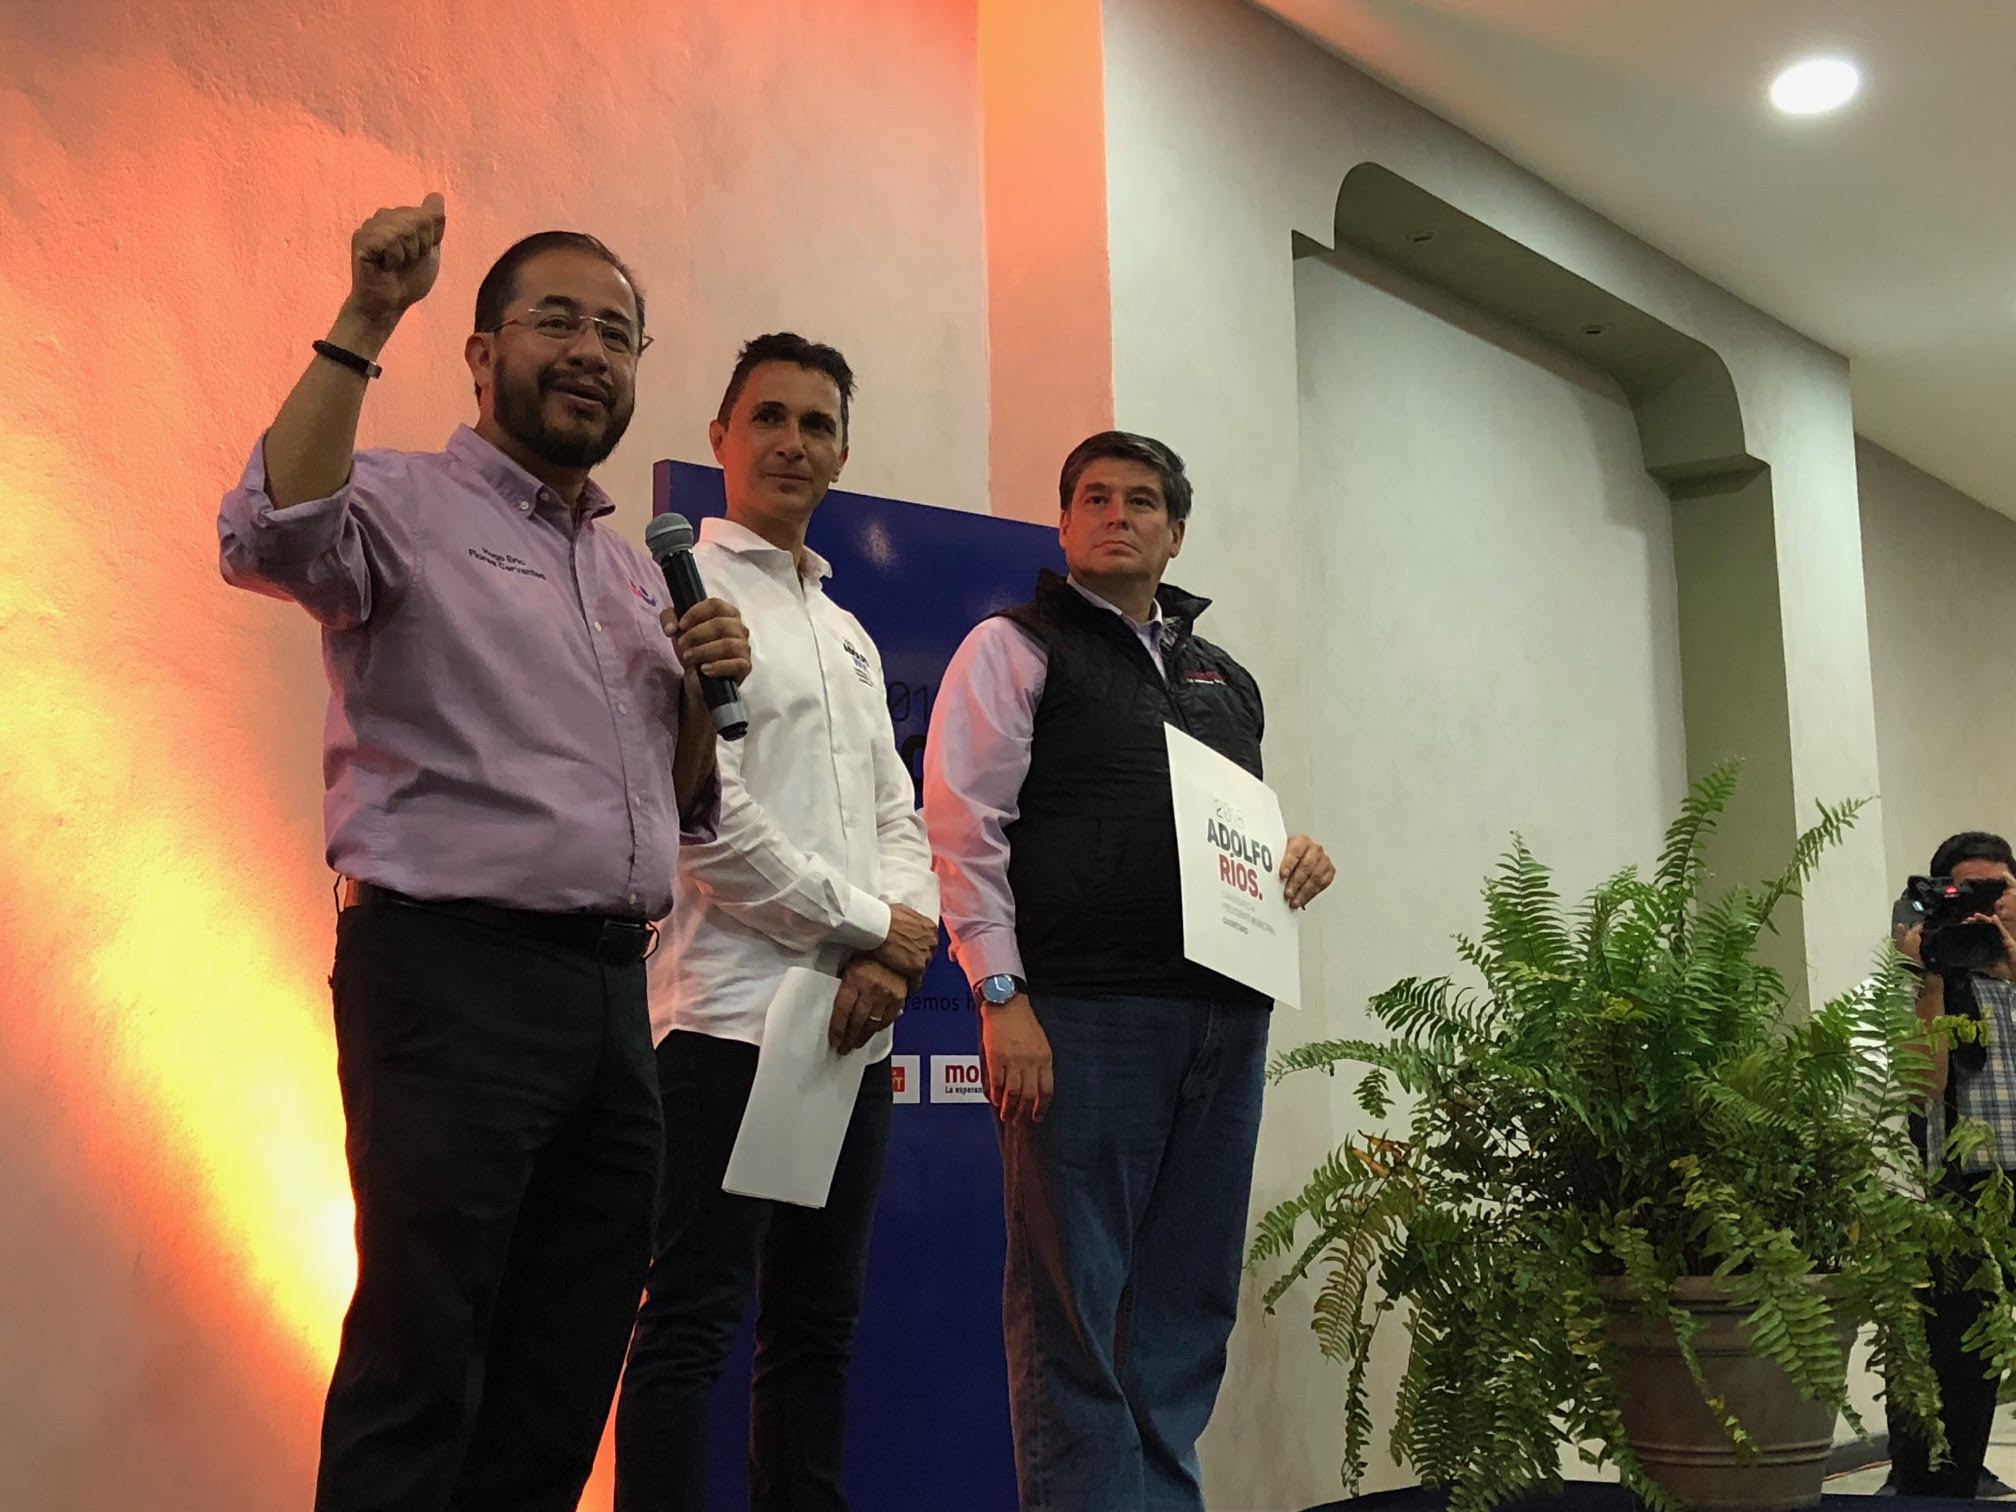  Adolfo Ríos se compromete a crear plataforma ciudadana para fiscalizar recursos municipales